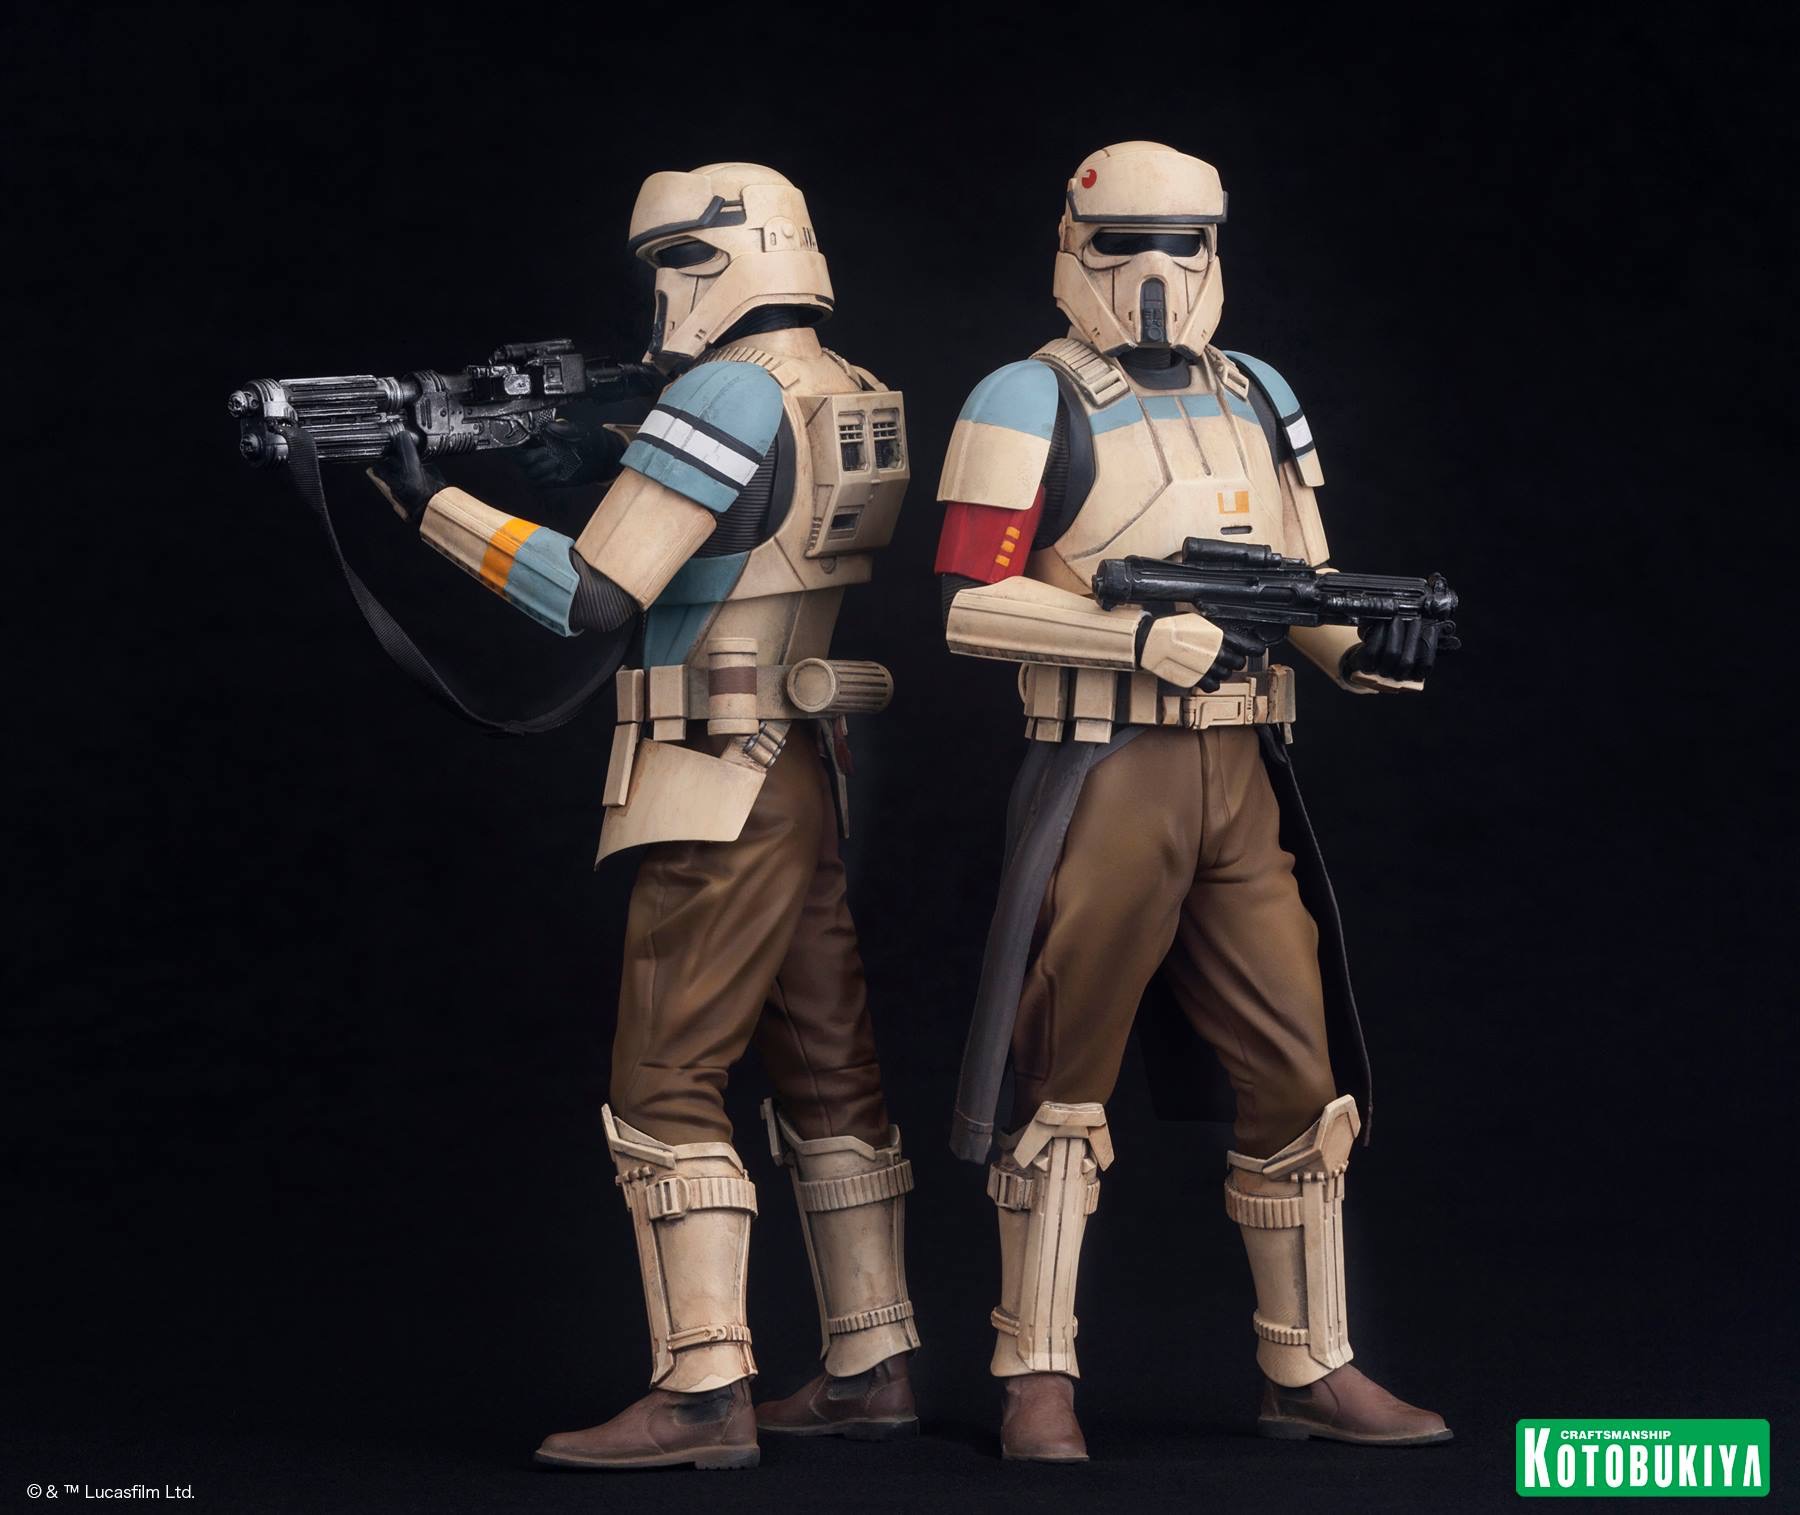 stormtrooper merchandise